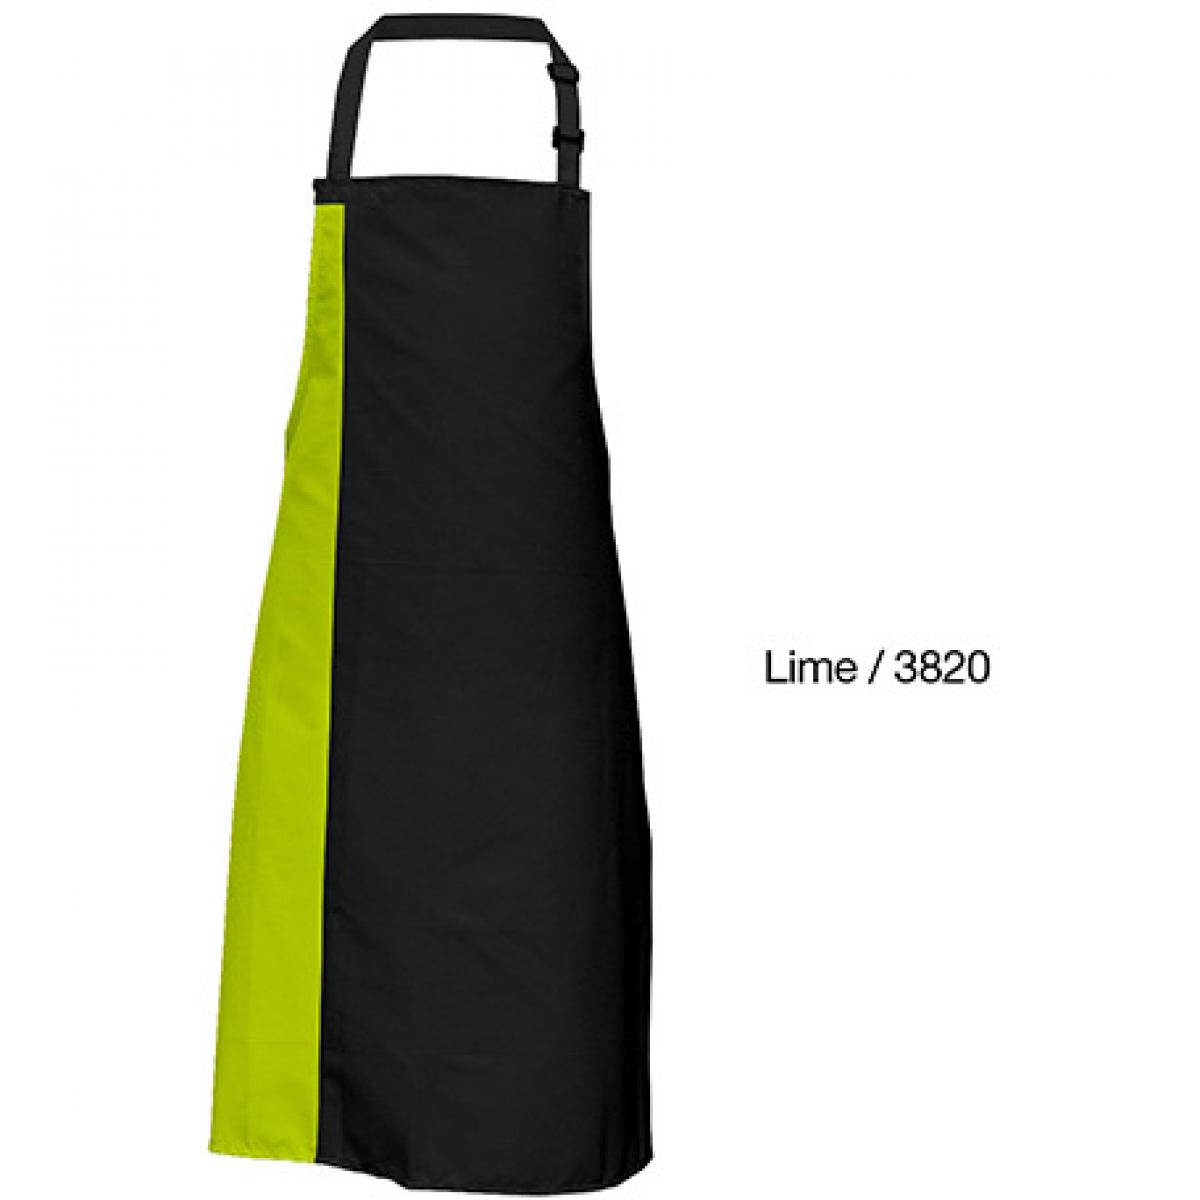 Hersteller: Link Kitchen Wear Herstellernummer: DS8572 Artikelbezeichnung: Duo Apron - 72 x 85 cm - Waschbar bis 60 °C Farbe: Black/Lime (ca. Pantone 382)